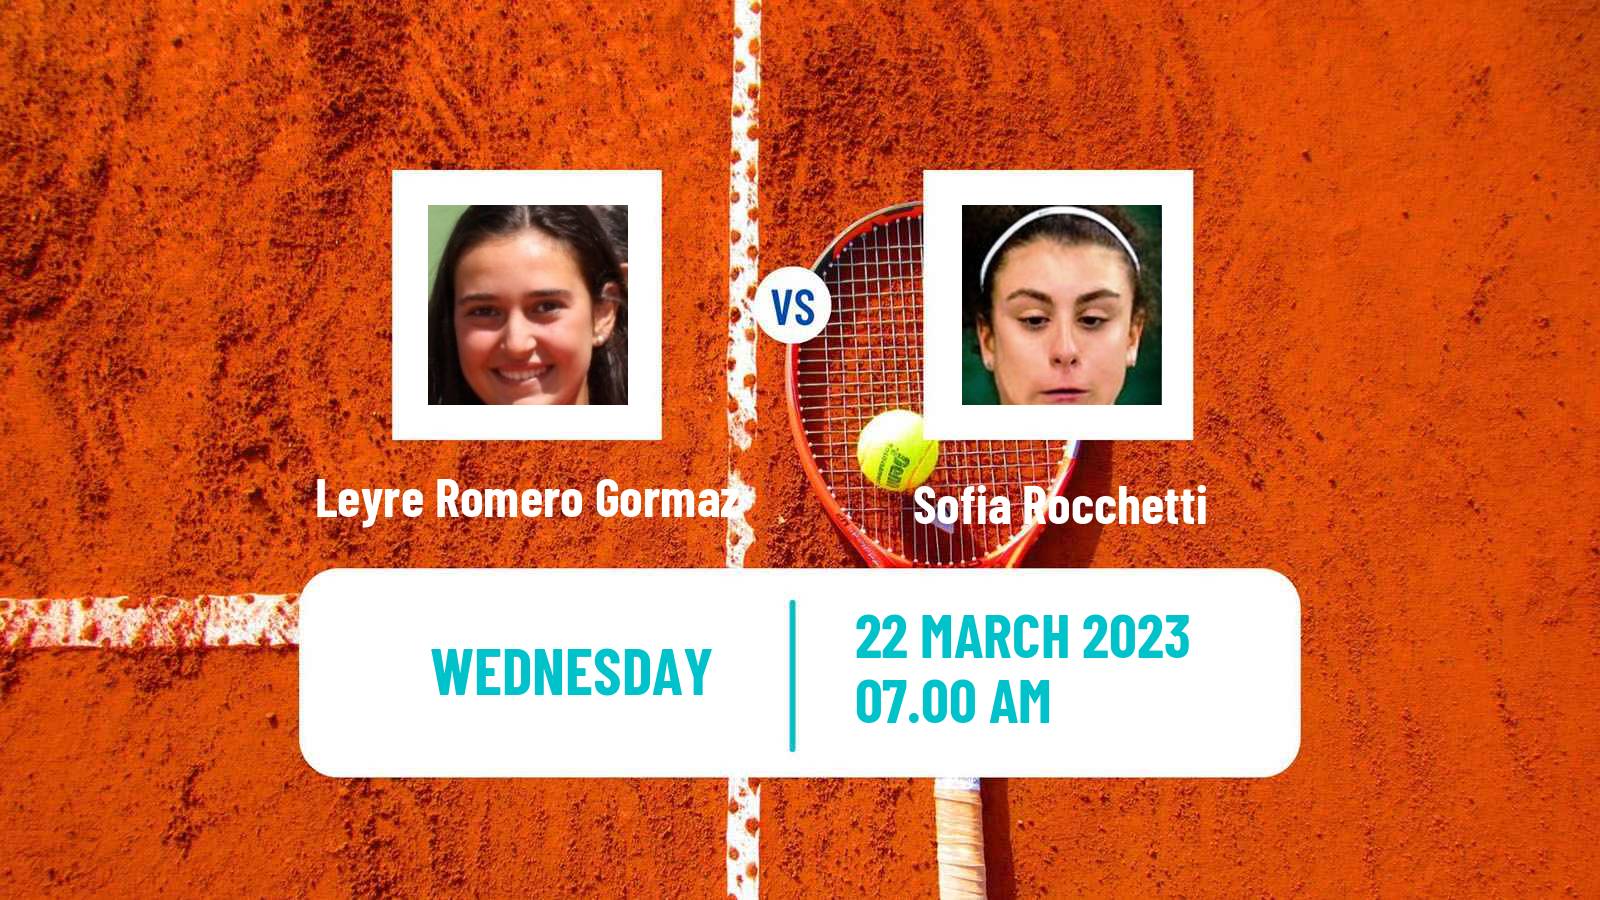 Tennis ITF Tournaments Leyre Romero Gormaz - Sofia Rocchetti